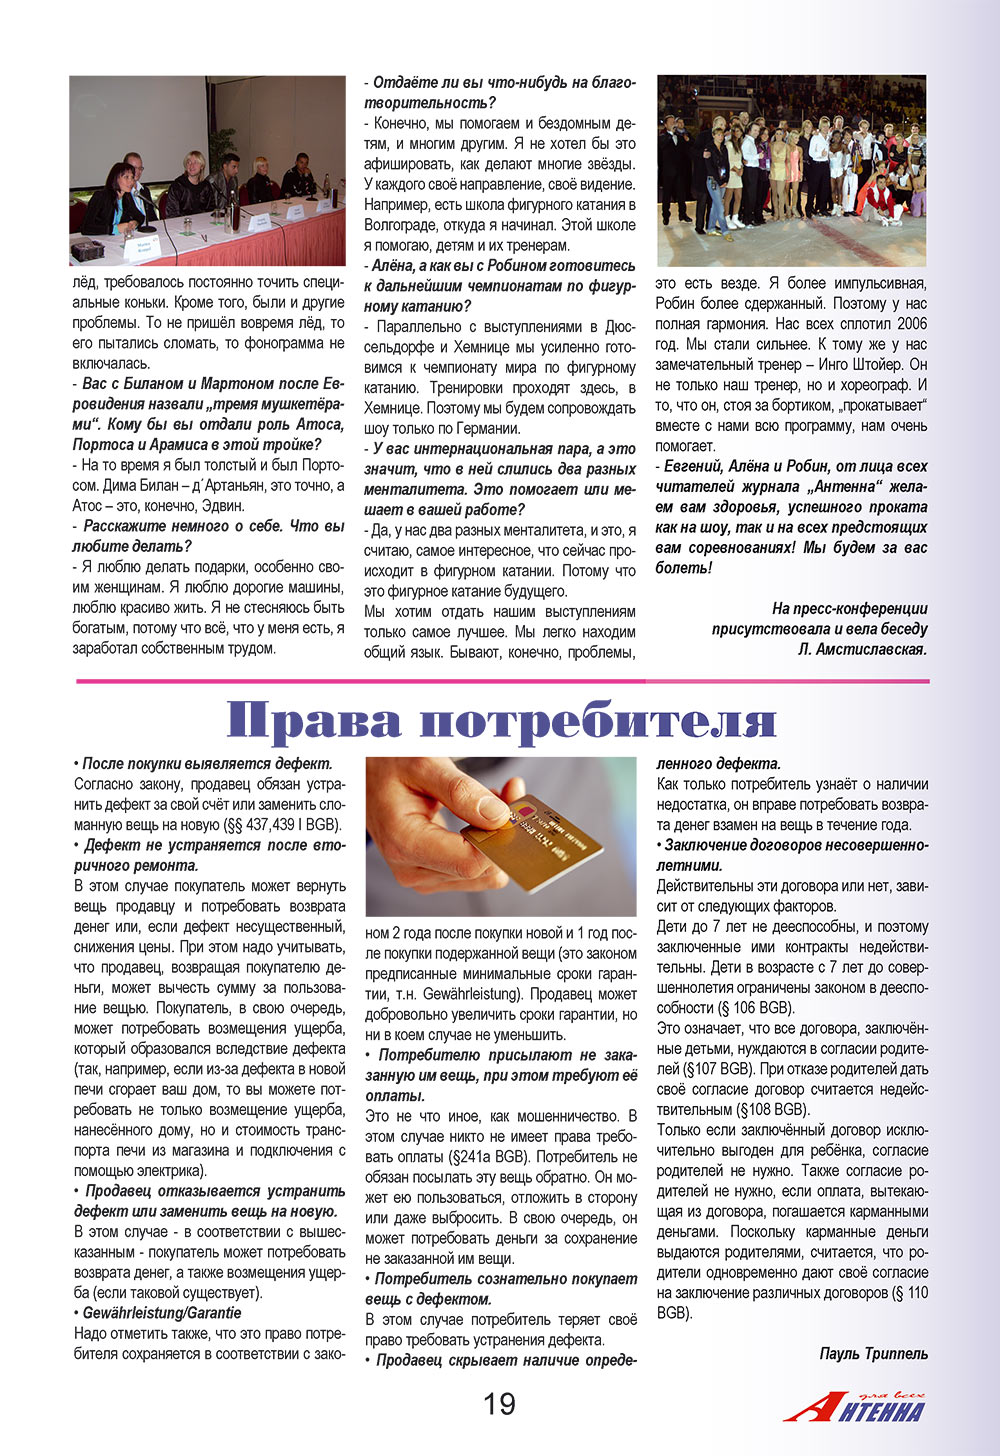 Антенна, журнал. 2008 №10 стр.19